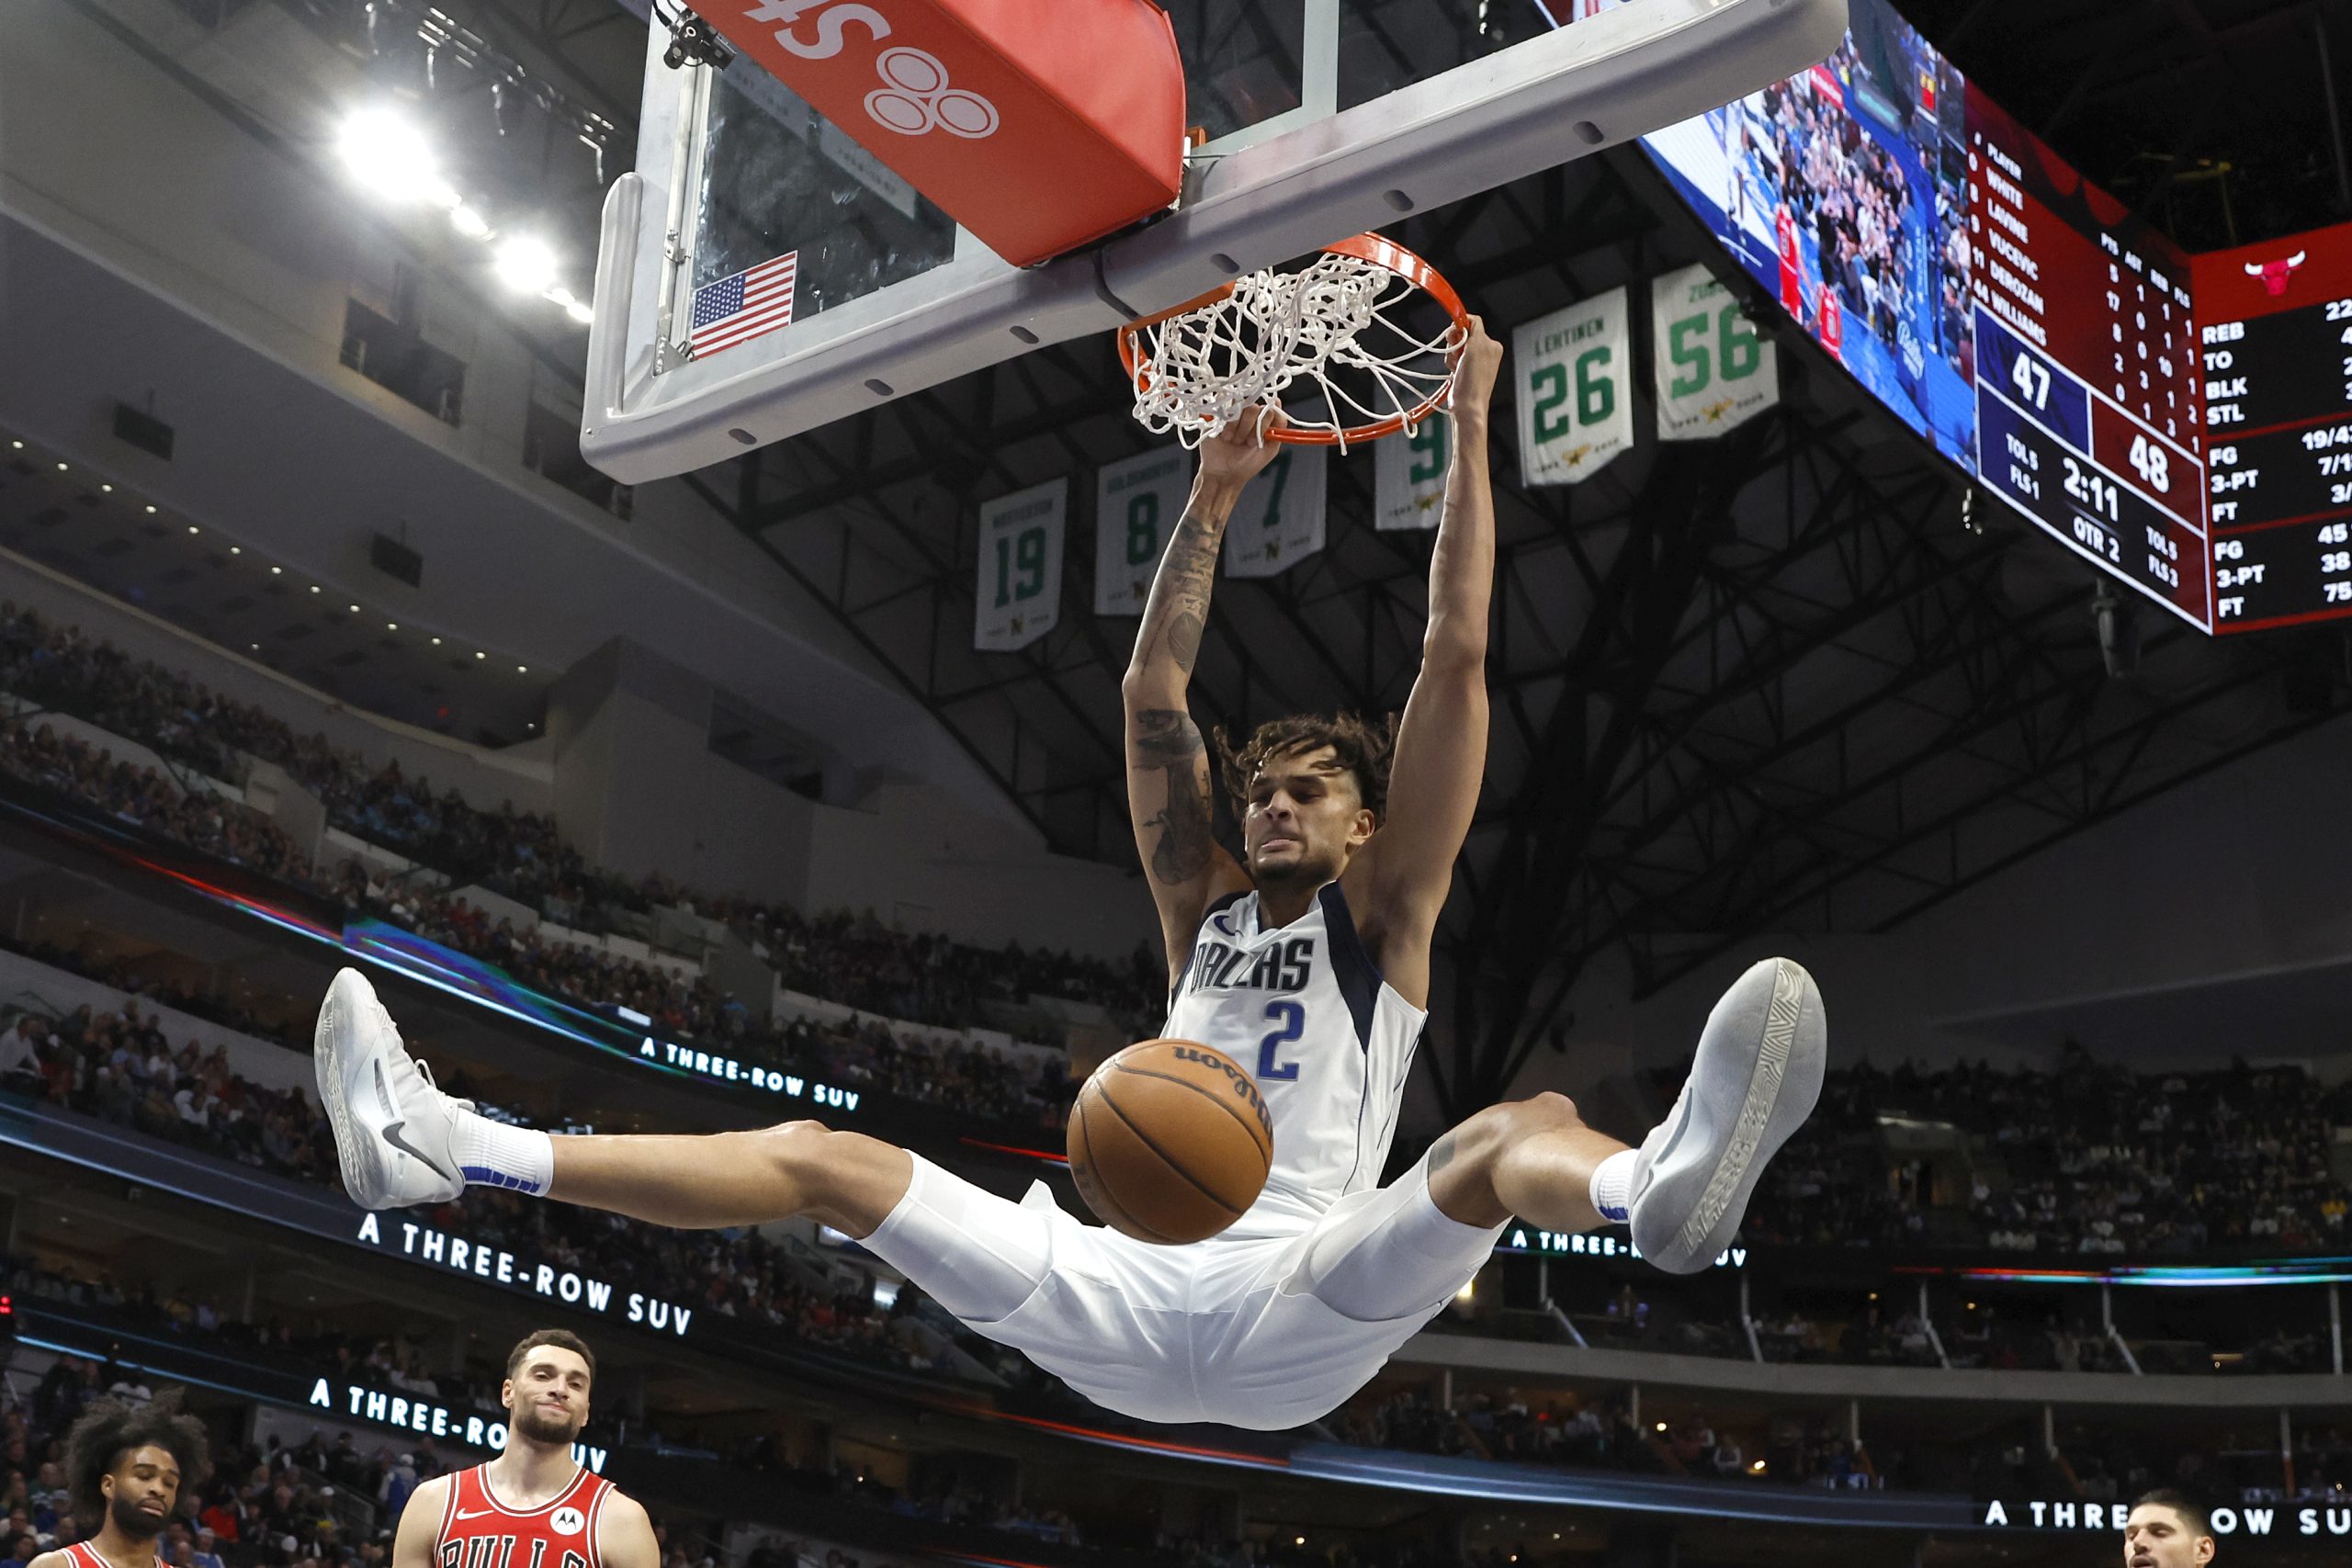 NBA News: Trener Suns o frustracji w zespole „Jest wysoka”